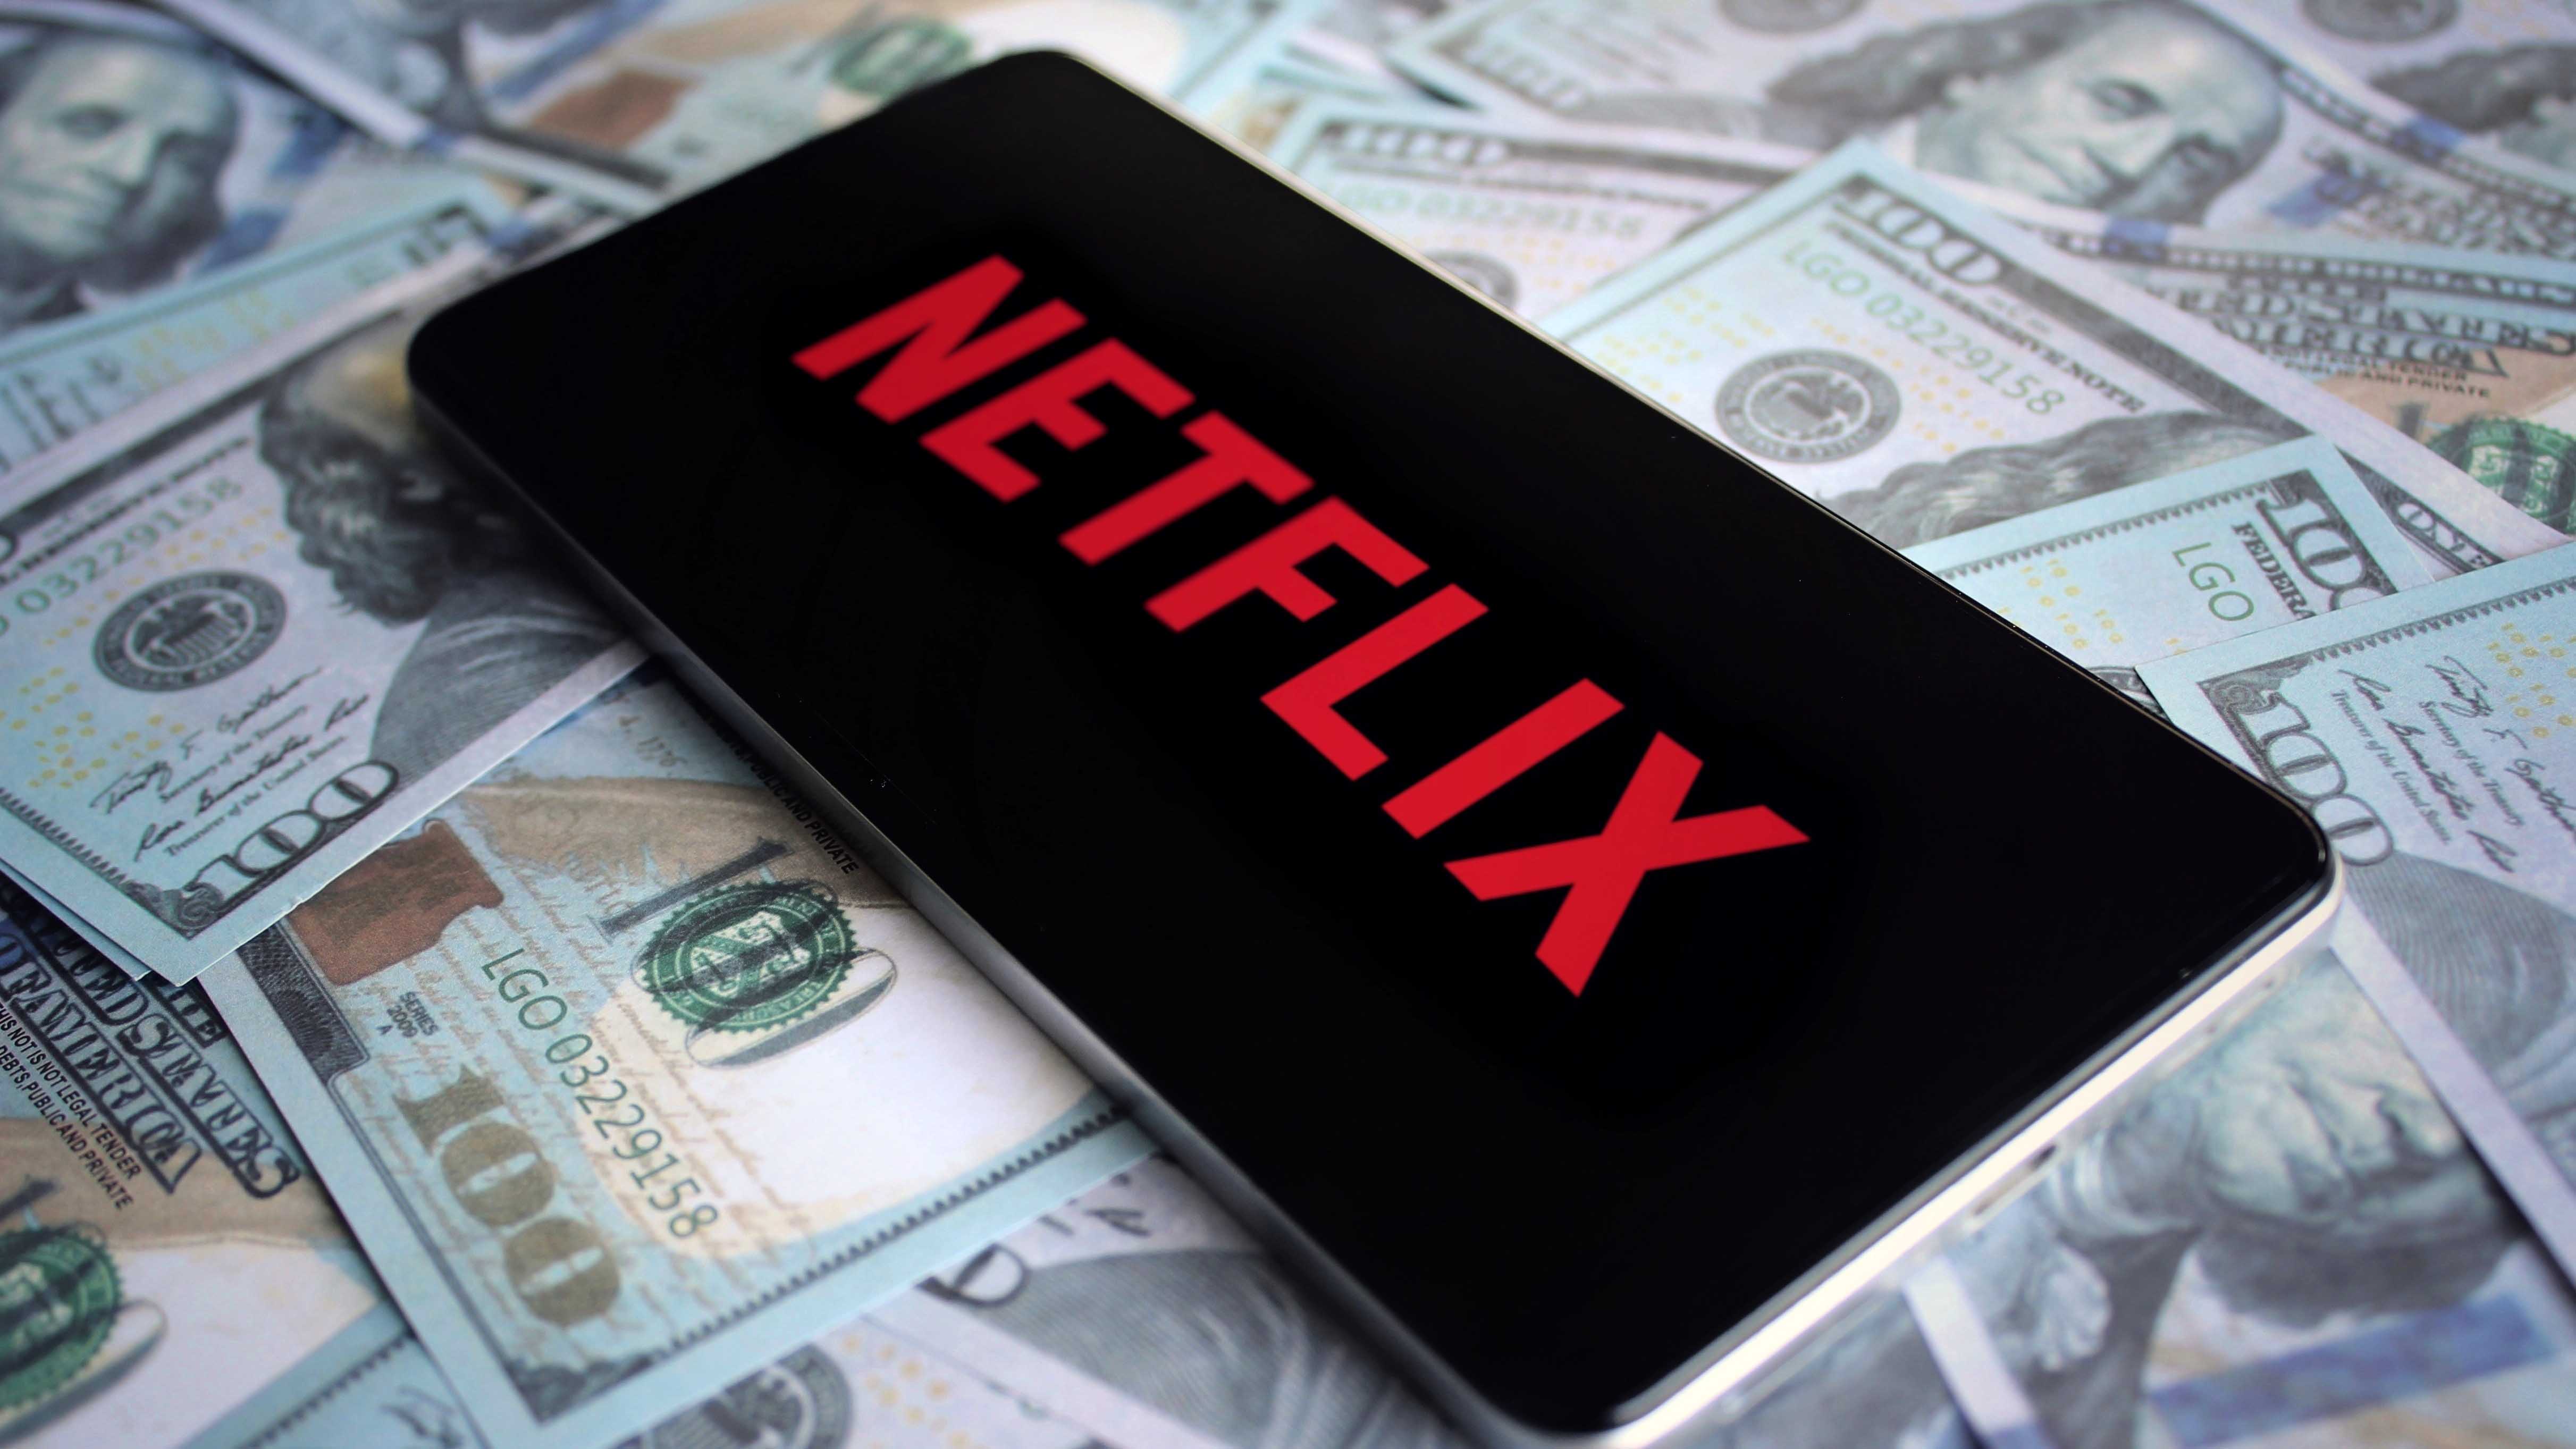 Netflix no aceptará pagos de suscripciones de la App Store – Telemundo  Fresno